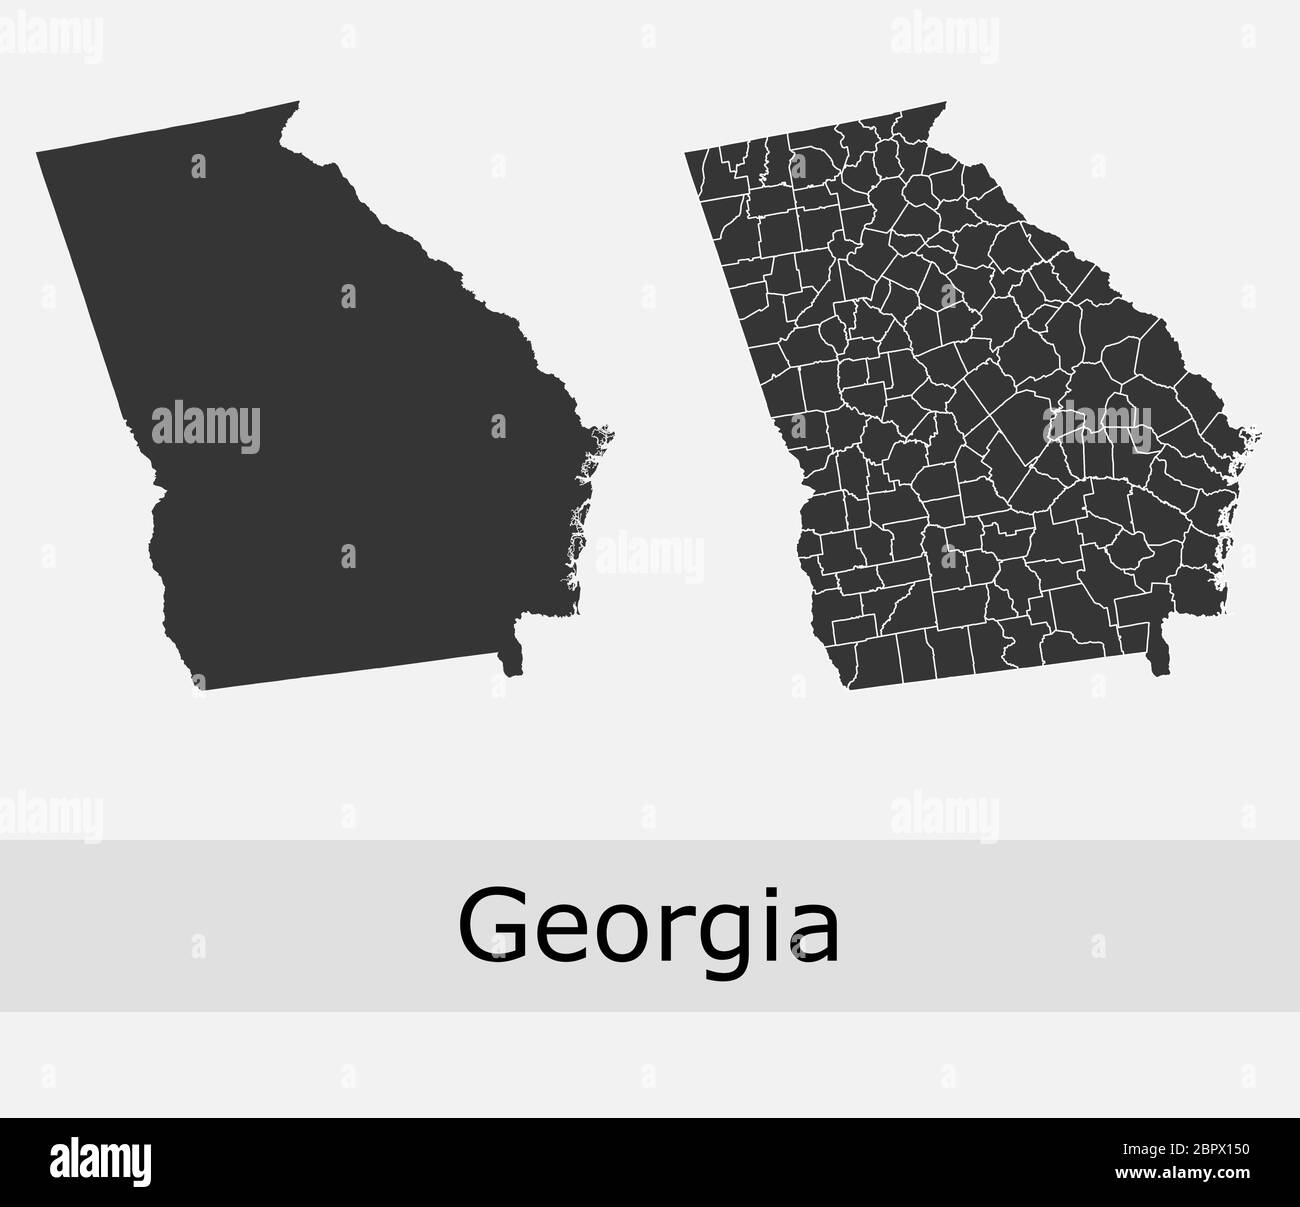 Georgien Karten Vektor skizzieren Grafschaften, Townships, Regionen, Gemeinden, Departements, Grenzen Stock Vektor